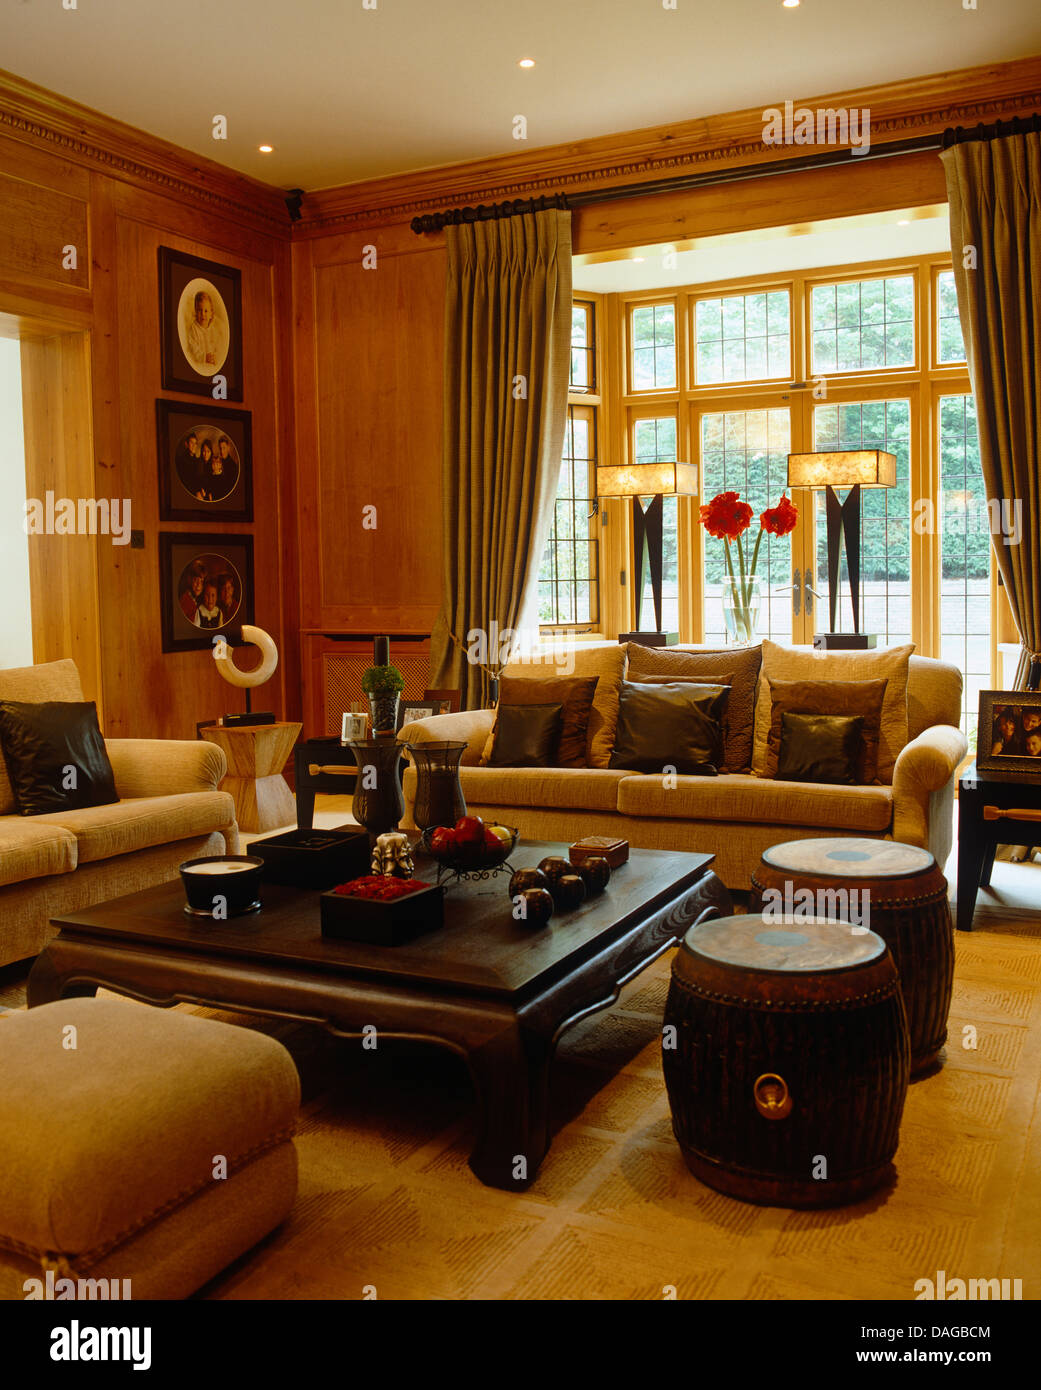 Canapé beige et le tambour autour de tabourets en bois indonésien table basse dans la salle de séjour avec lampes Art déco on windowsill Banque D'Images